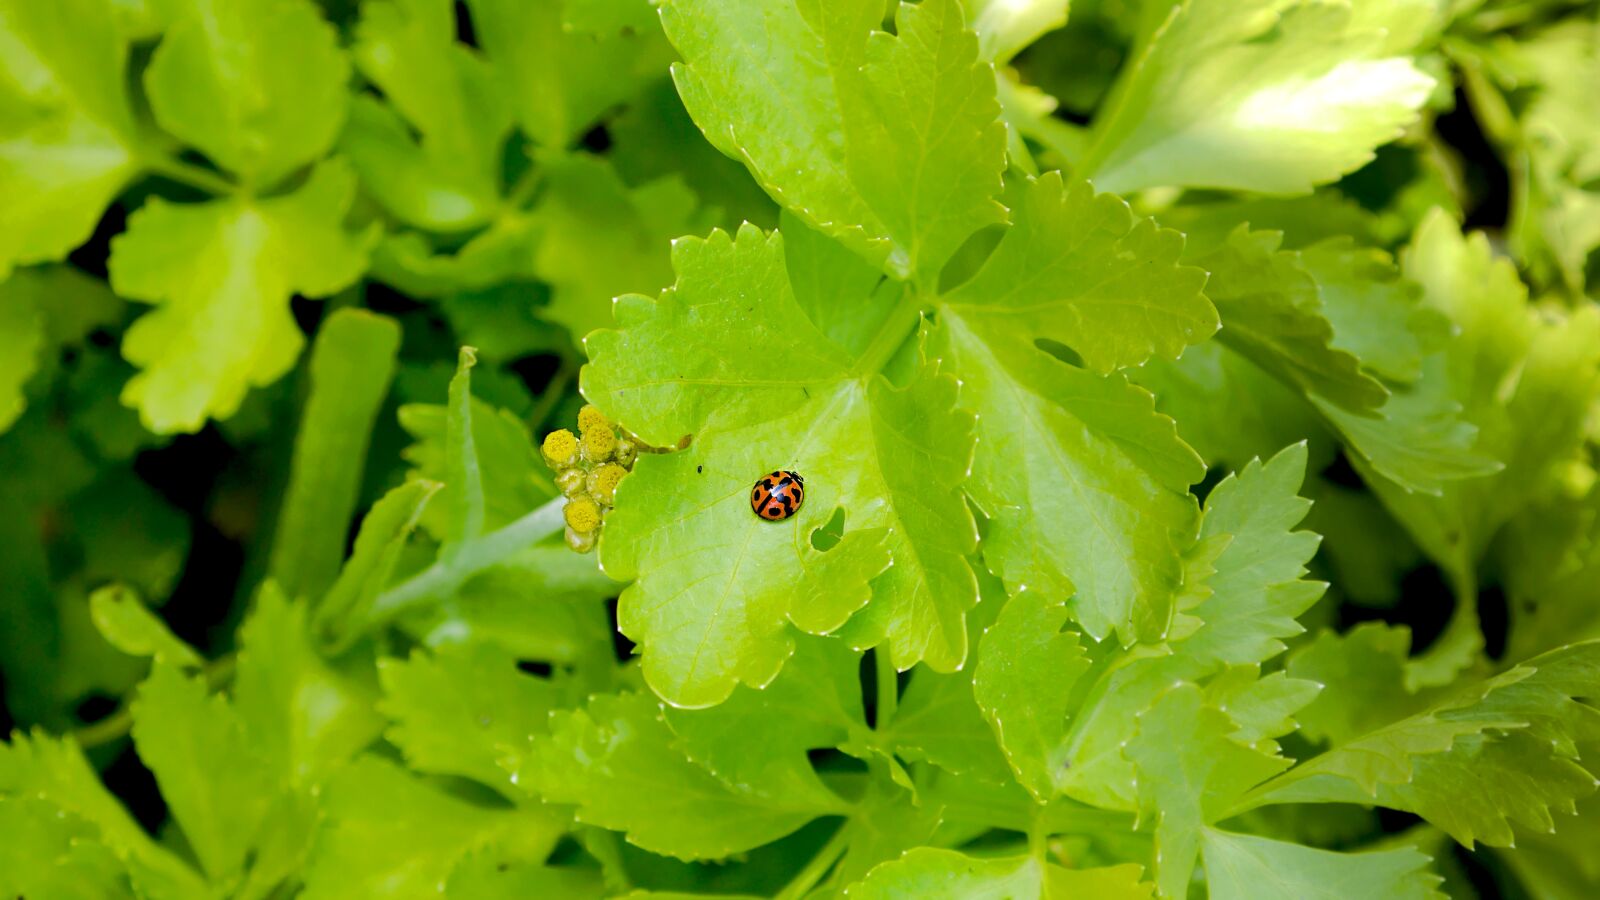 Panasonic Lumix DMC-GF6 sample photo. Nature, plant, ladybug photography